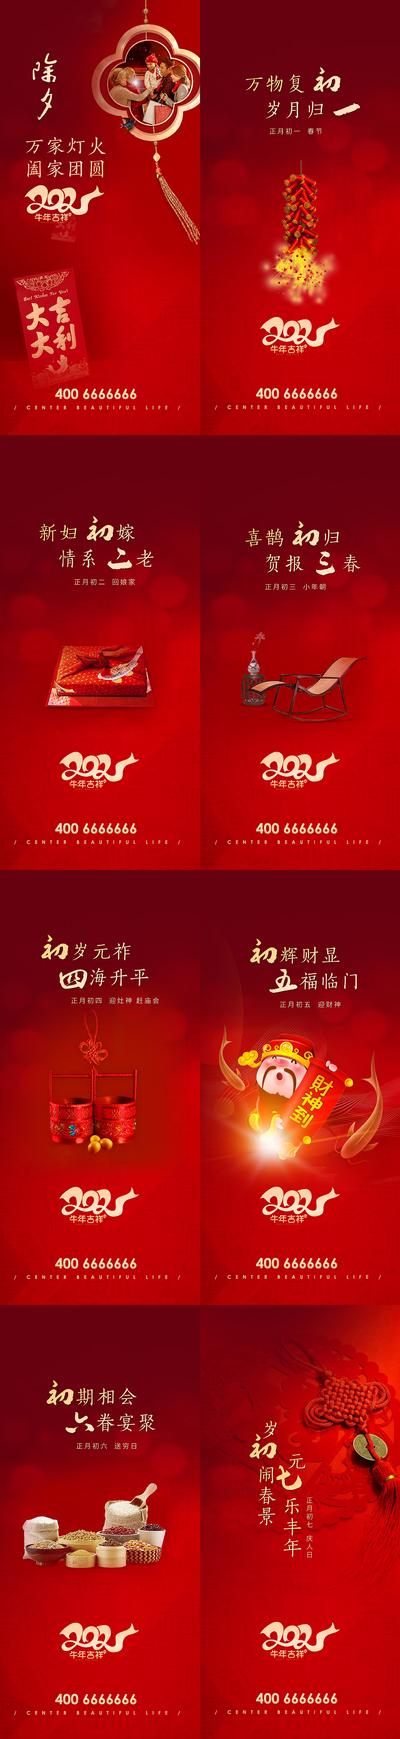 【南门网】海报 中国传统节日 春节 除夕 初一 年俗 鞭炮 财神 系列